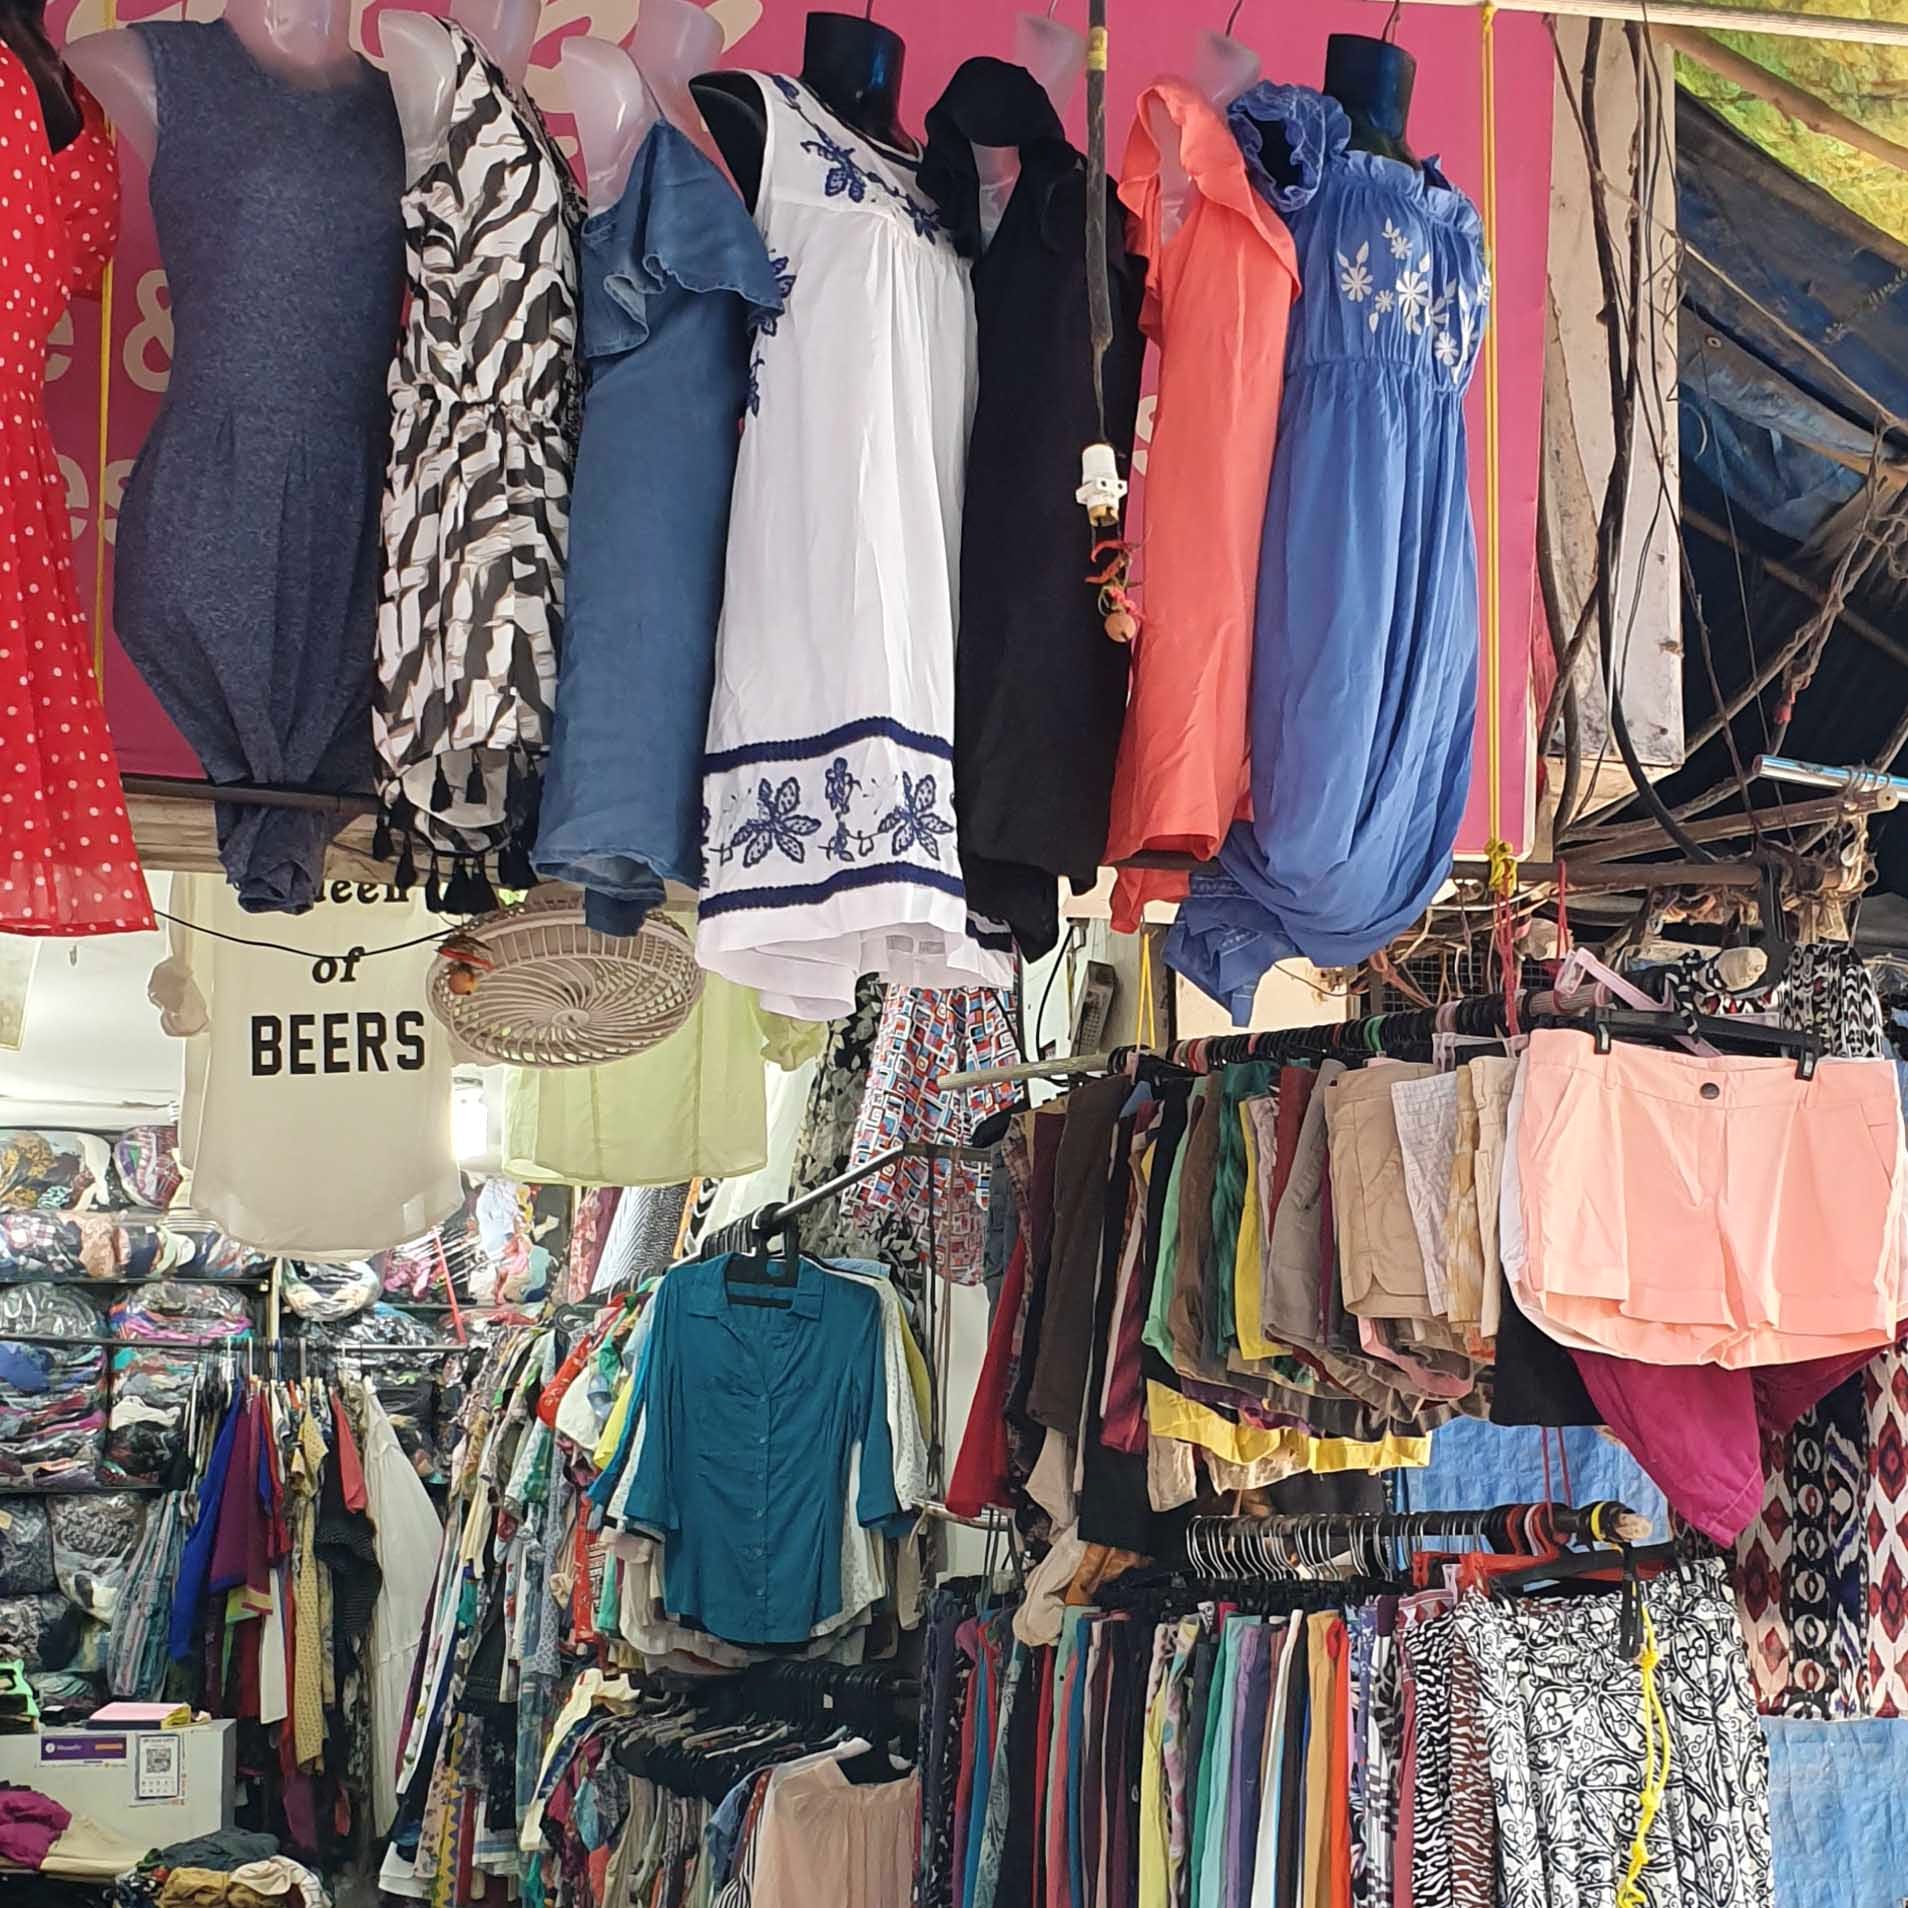 Selling,Clothing,Boutique,Bazaar,Public space,Human settlement,Market,Fashion,Textile,Room